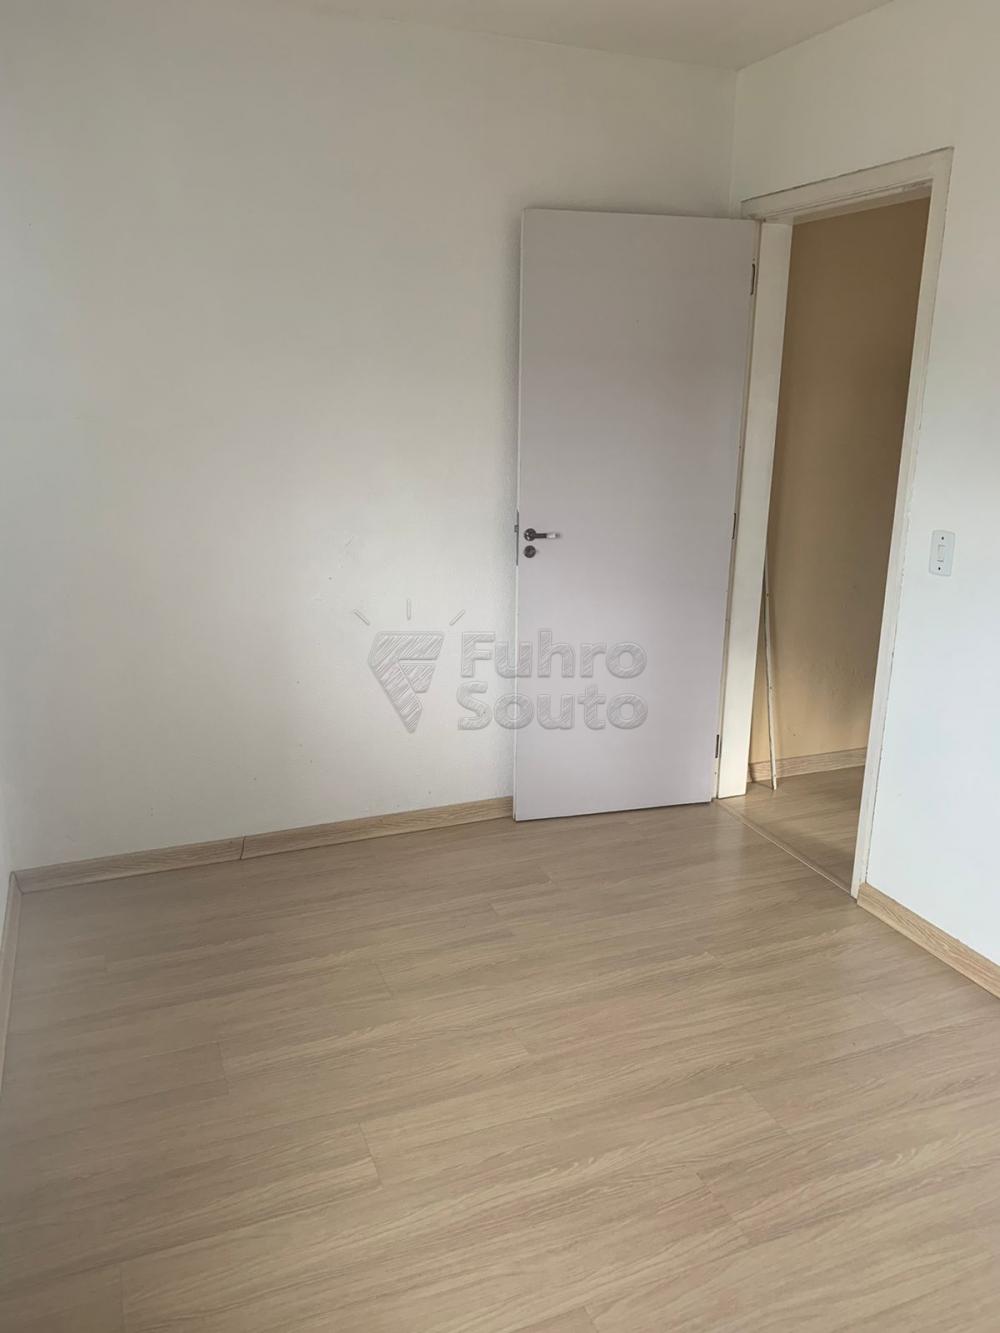 Comprar Apartamento / Padrão em Pelotas R$ 200.000,00 - Foto 4